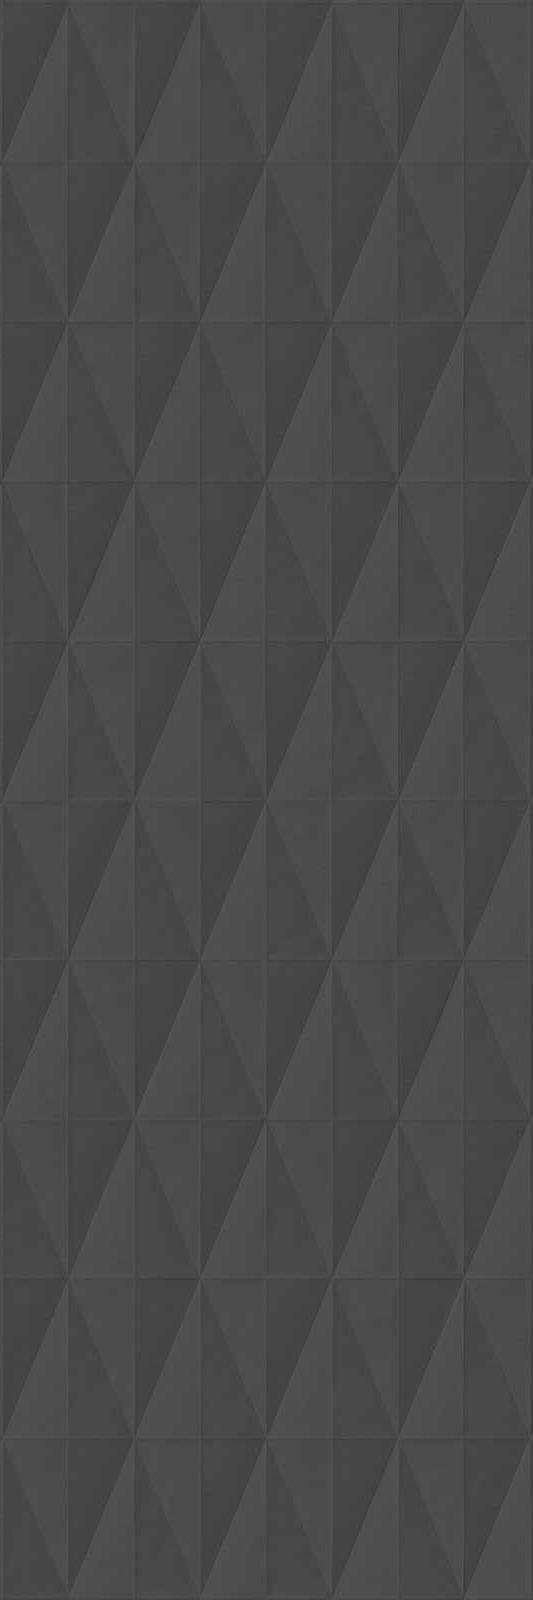 Фото - Керамическая плитка для стен Marazzi Eclettica 40x120 серый (M1J7) керамическая плитка для стен marazzi eclettica 40x120 красный m19k